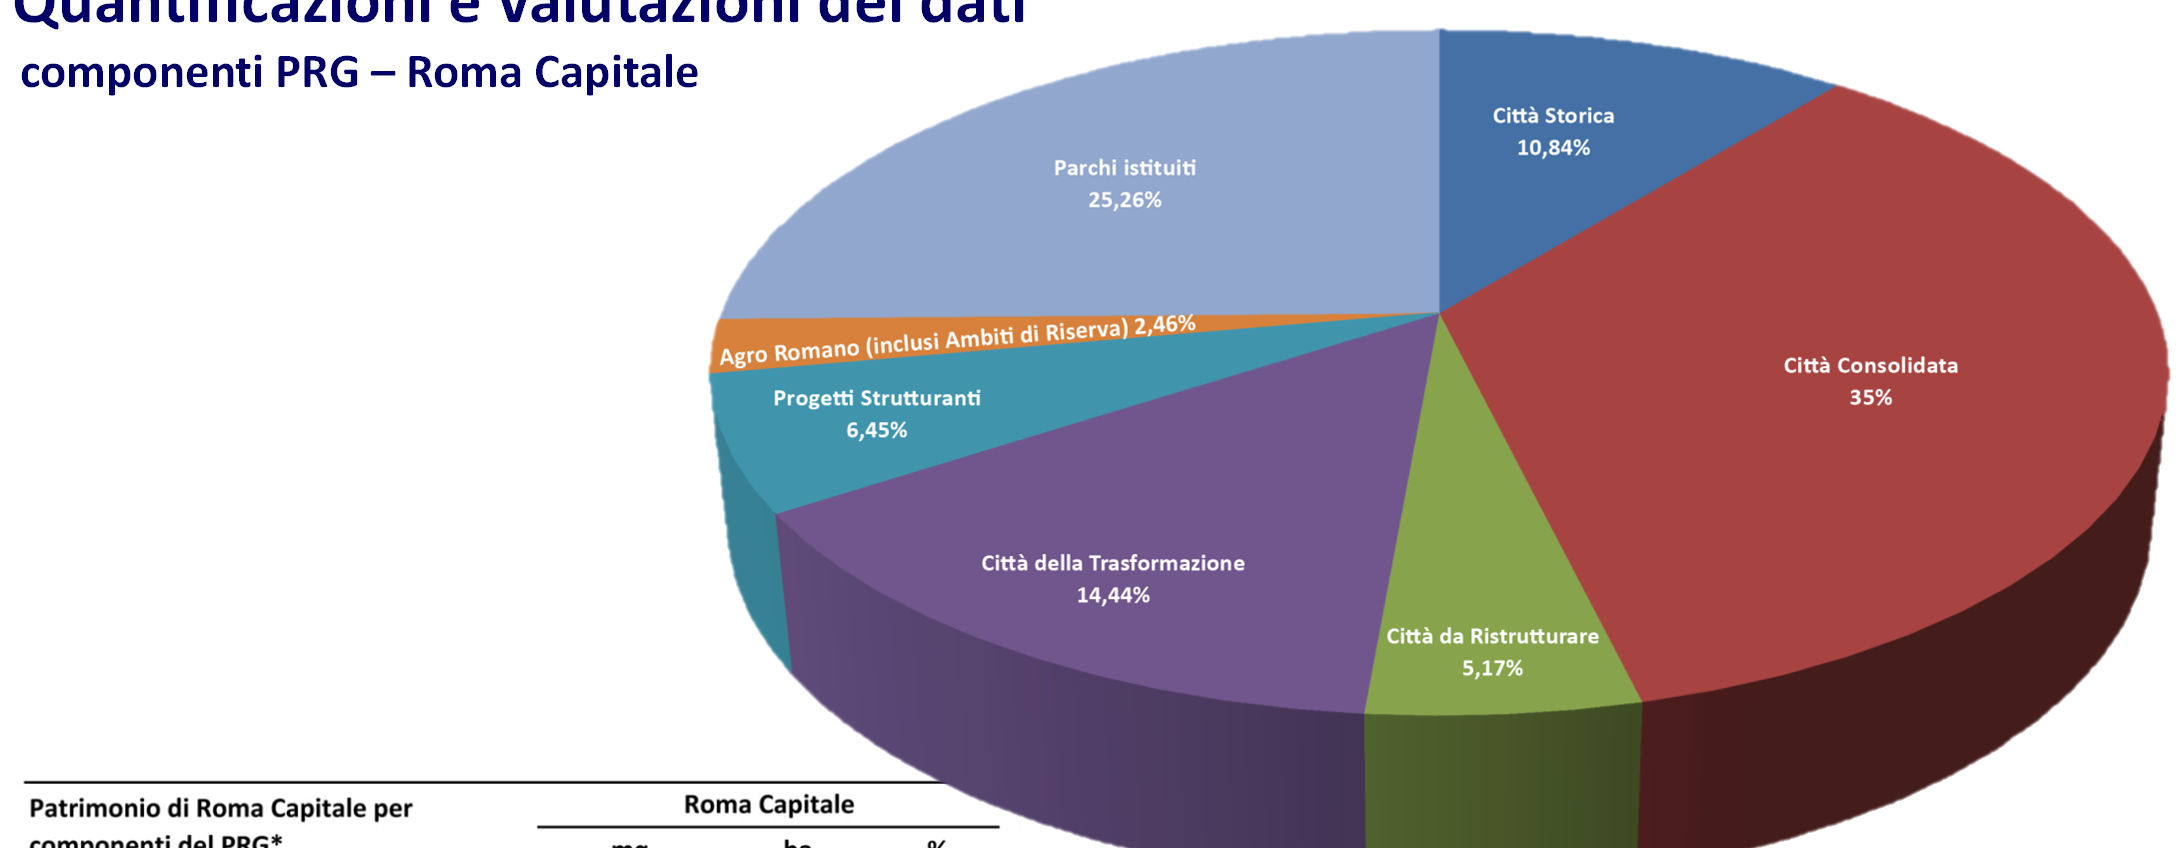 Quantificazioni e valutazioni dei dati componenti PRG Roma Capitale Quantificazione